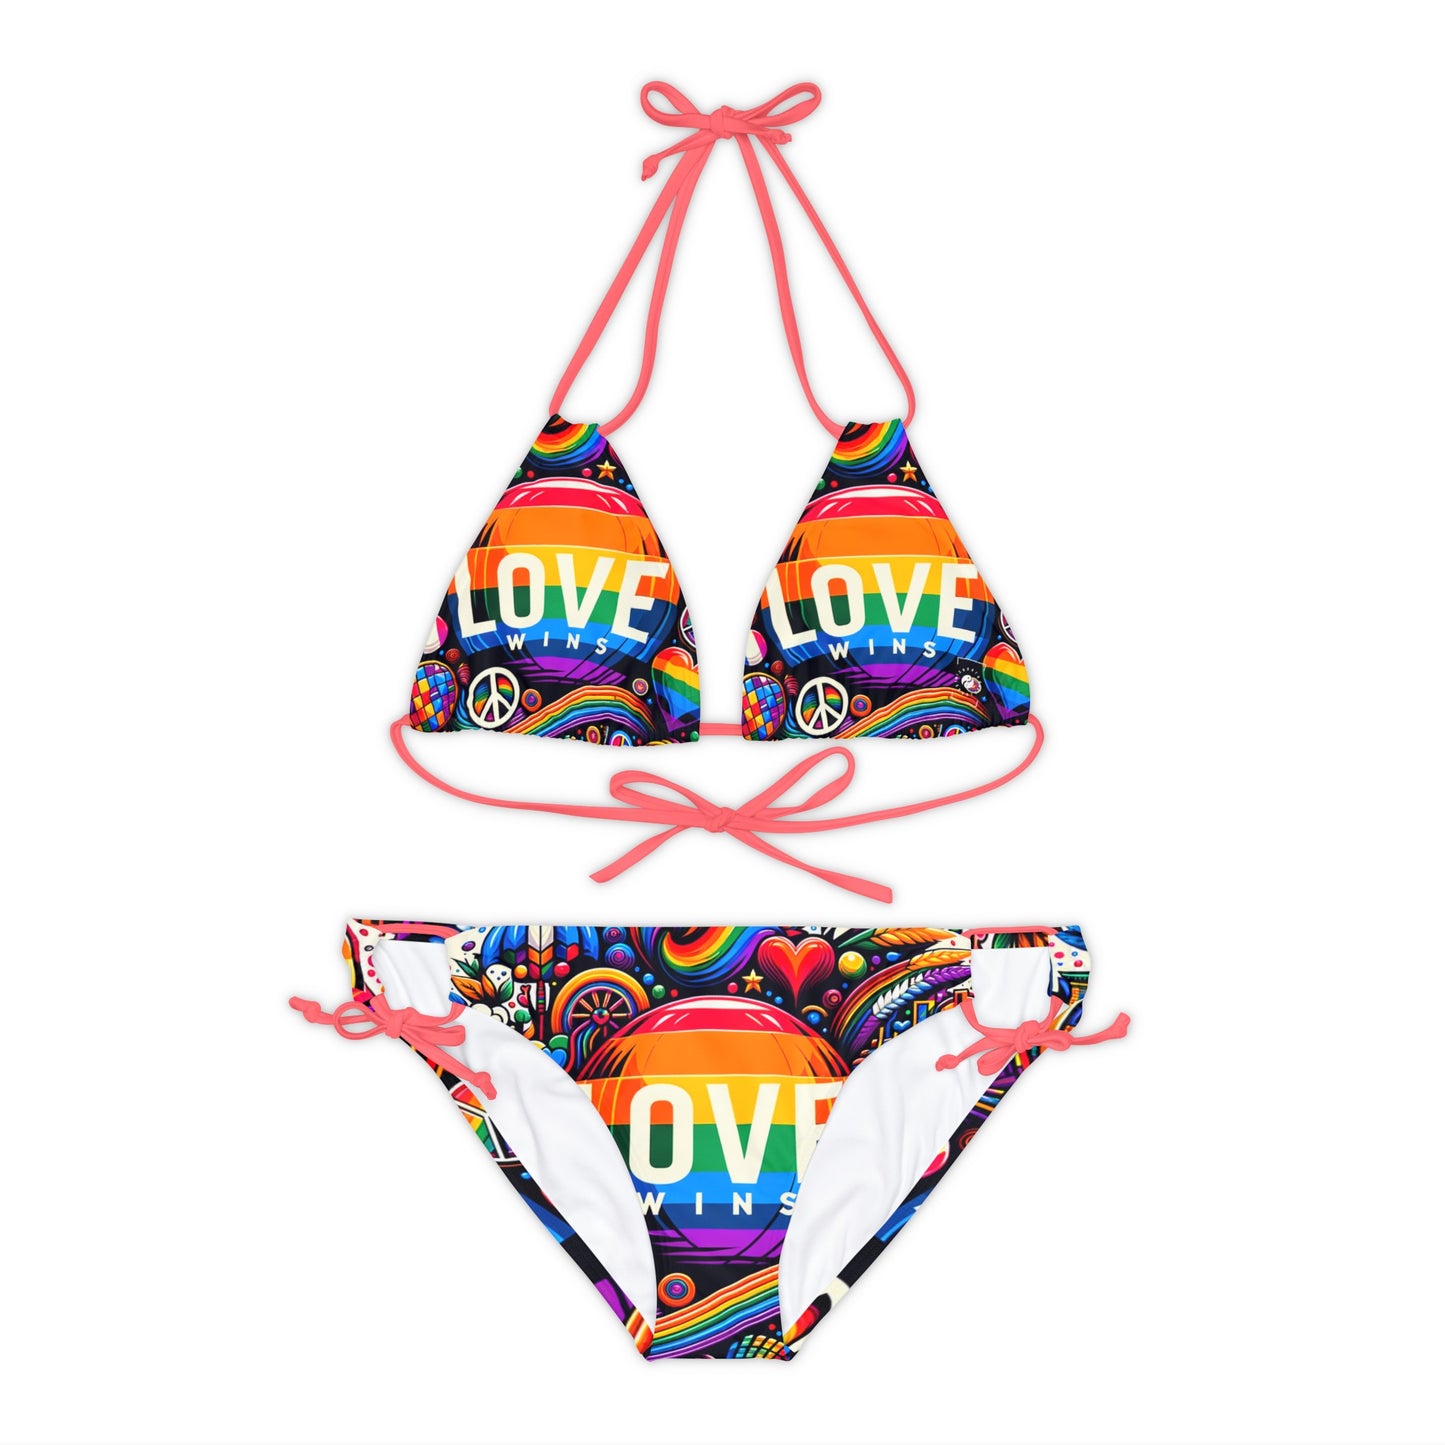 LOVE WINS - Lace-up Bikini Set